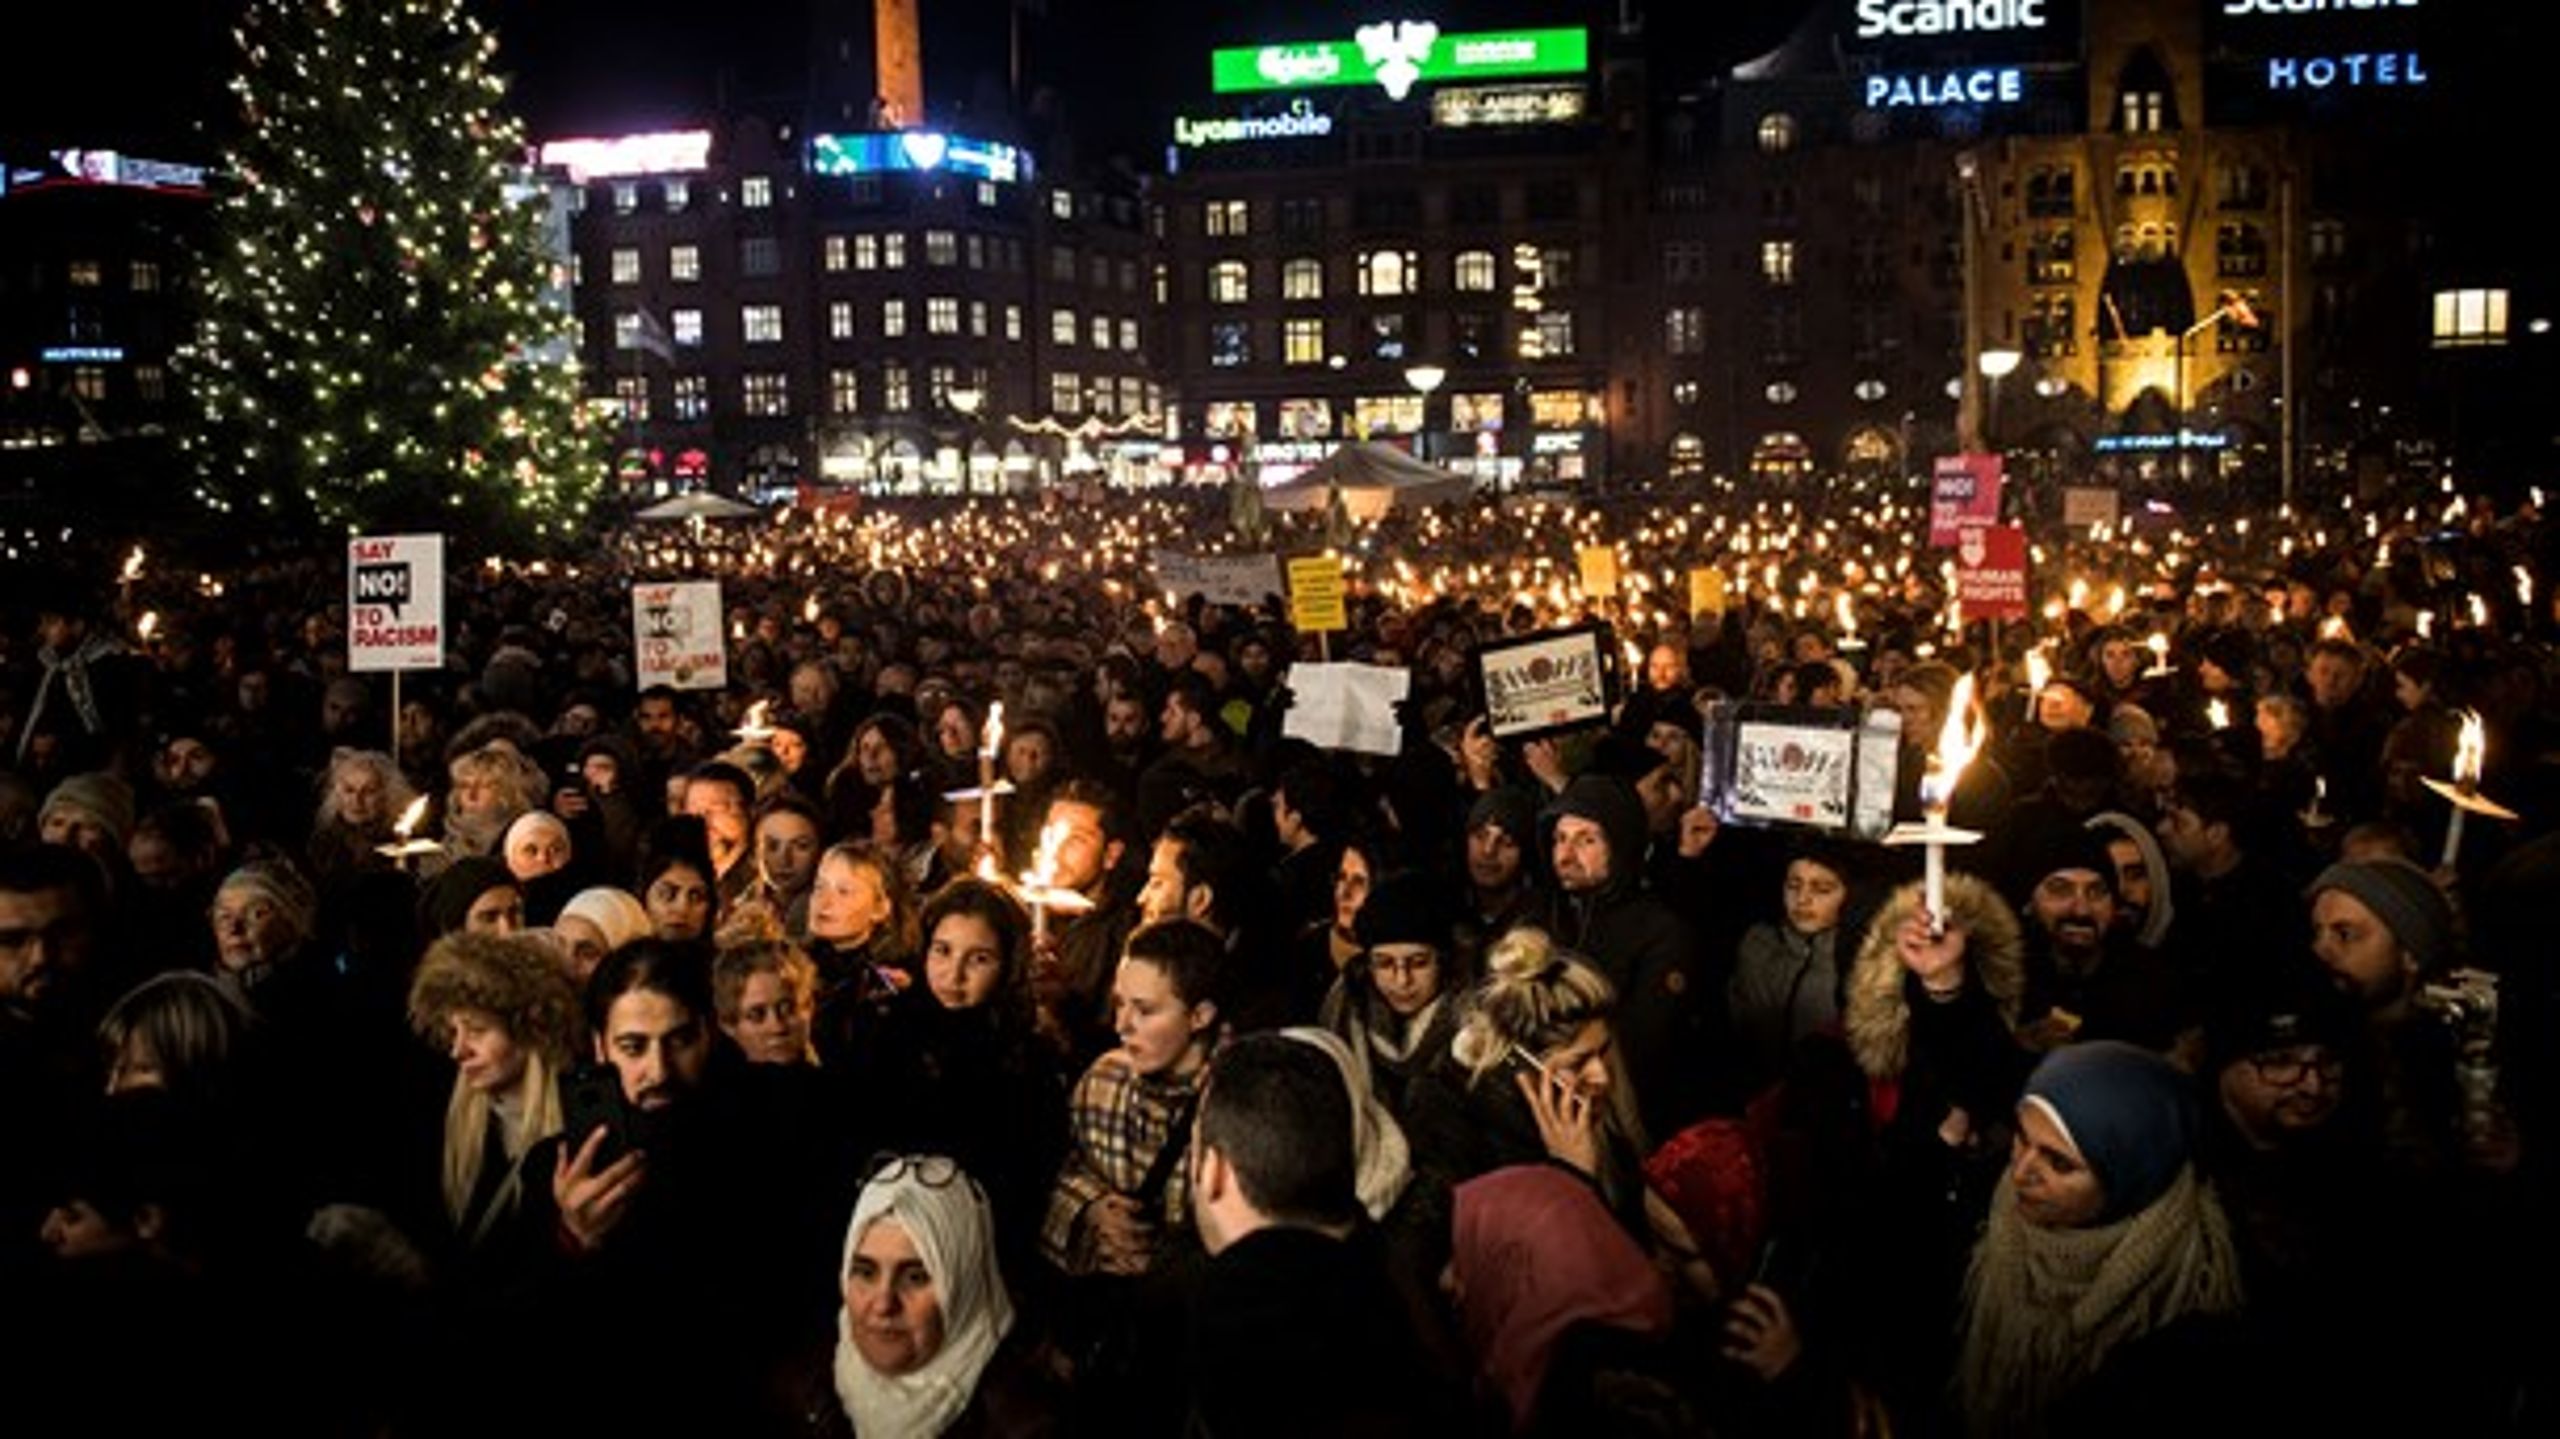 Mange trodsede decembermørket og tog til demonstration for menneskerettighederne.